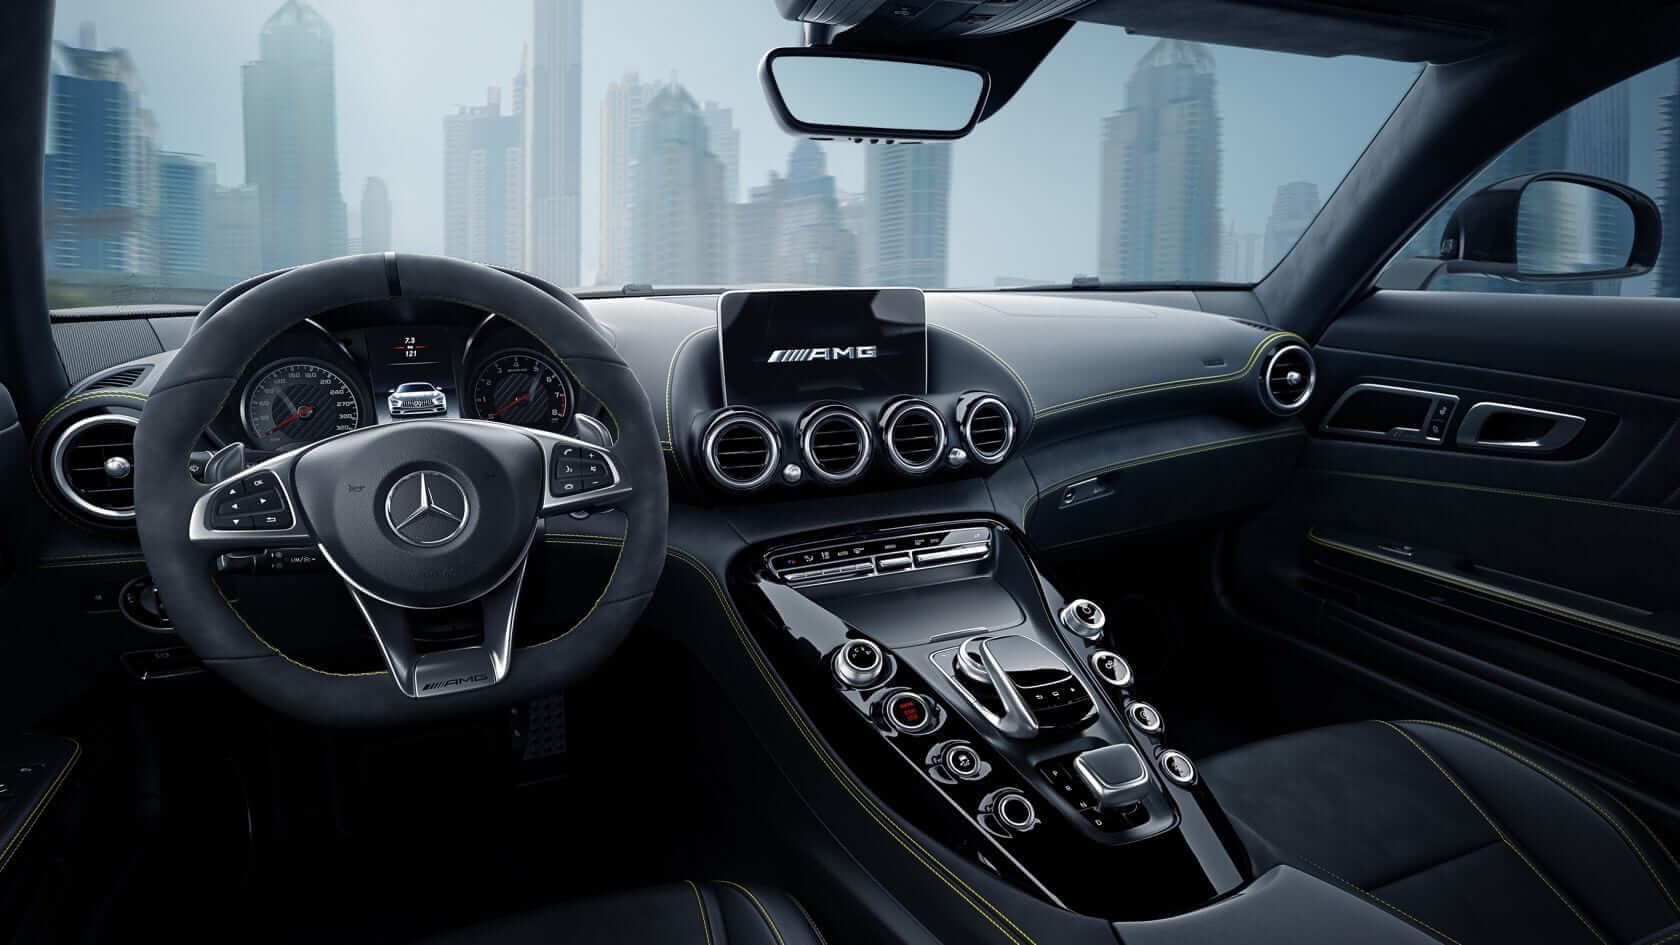 Mercedes AMG GT dashboard